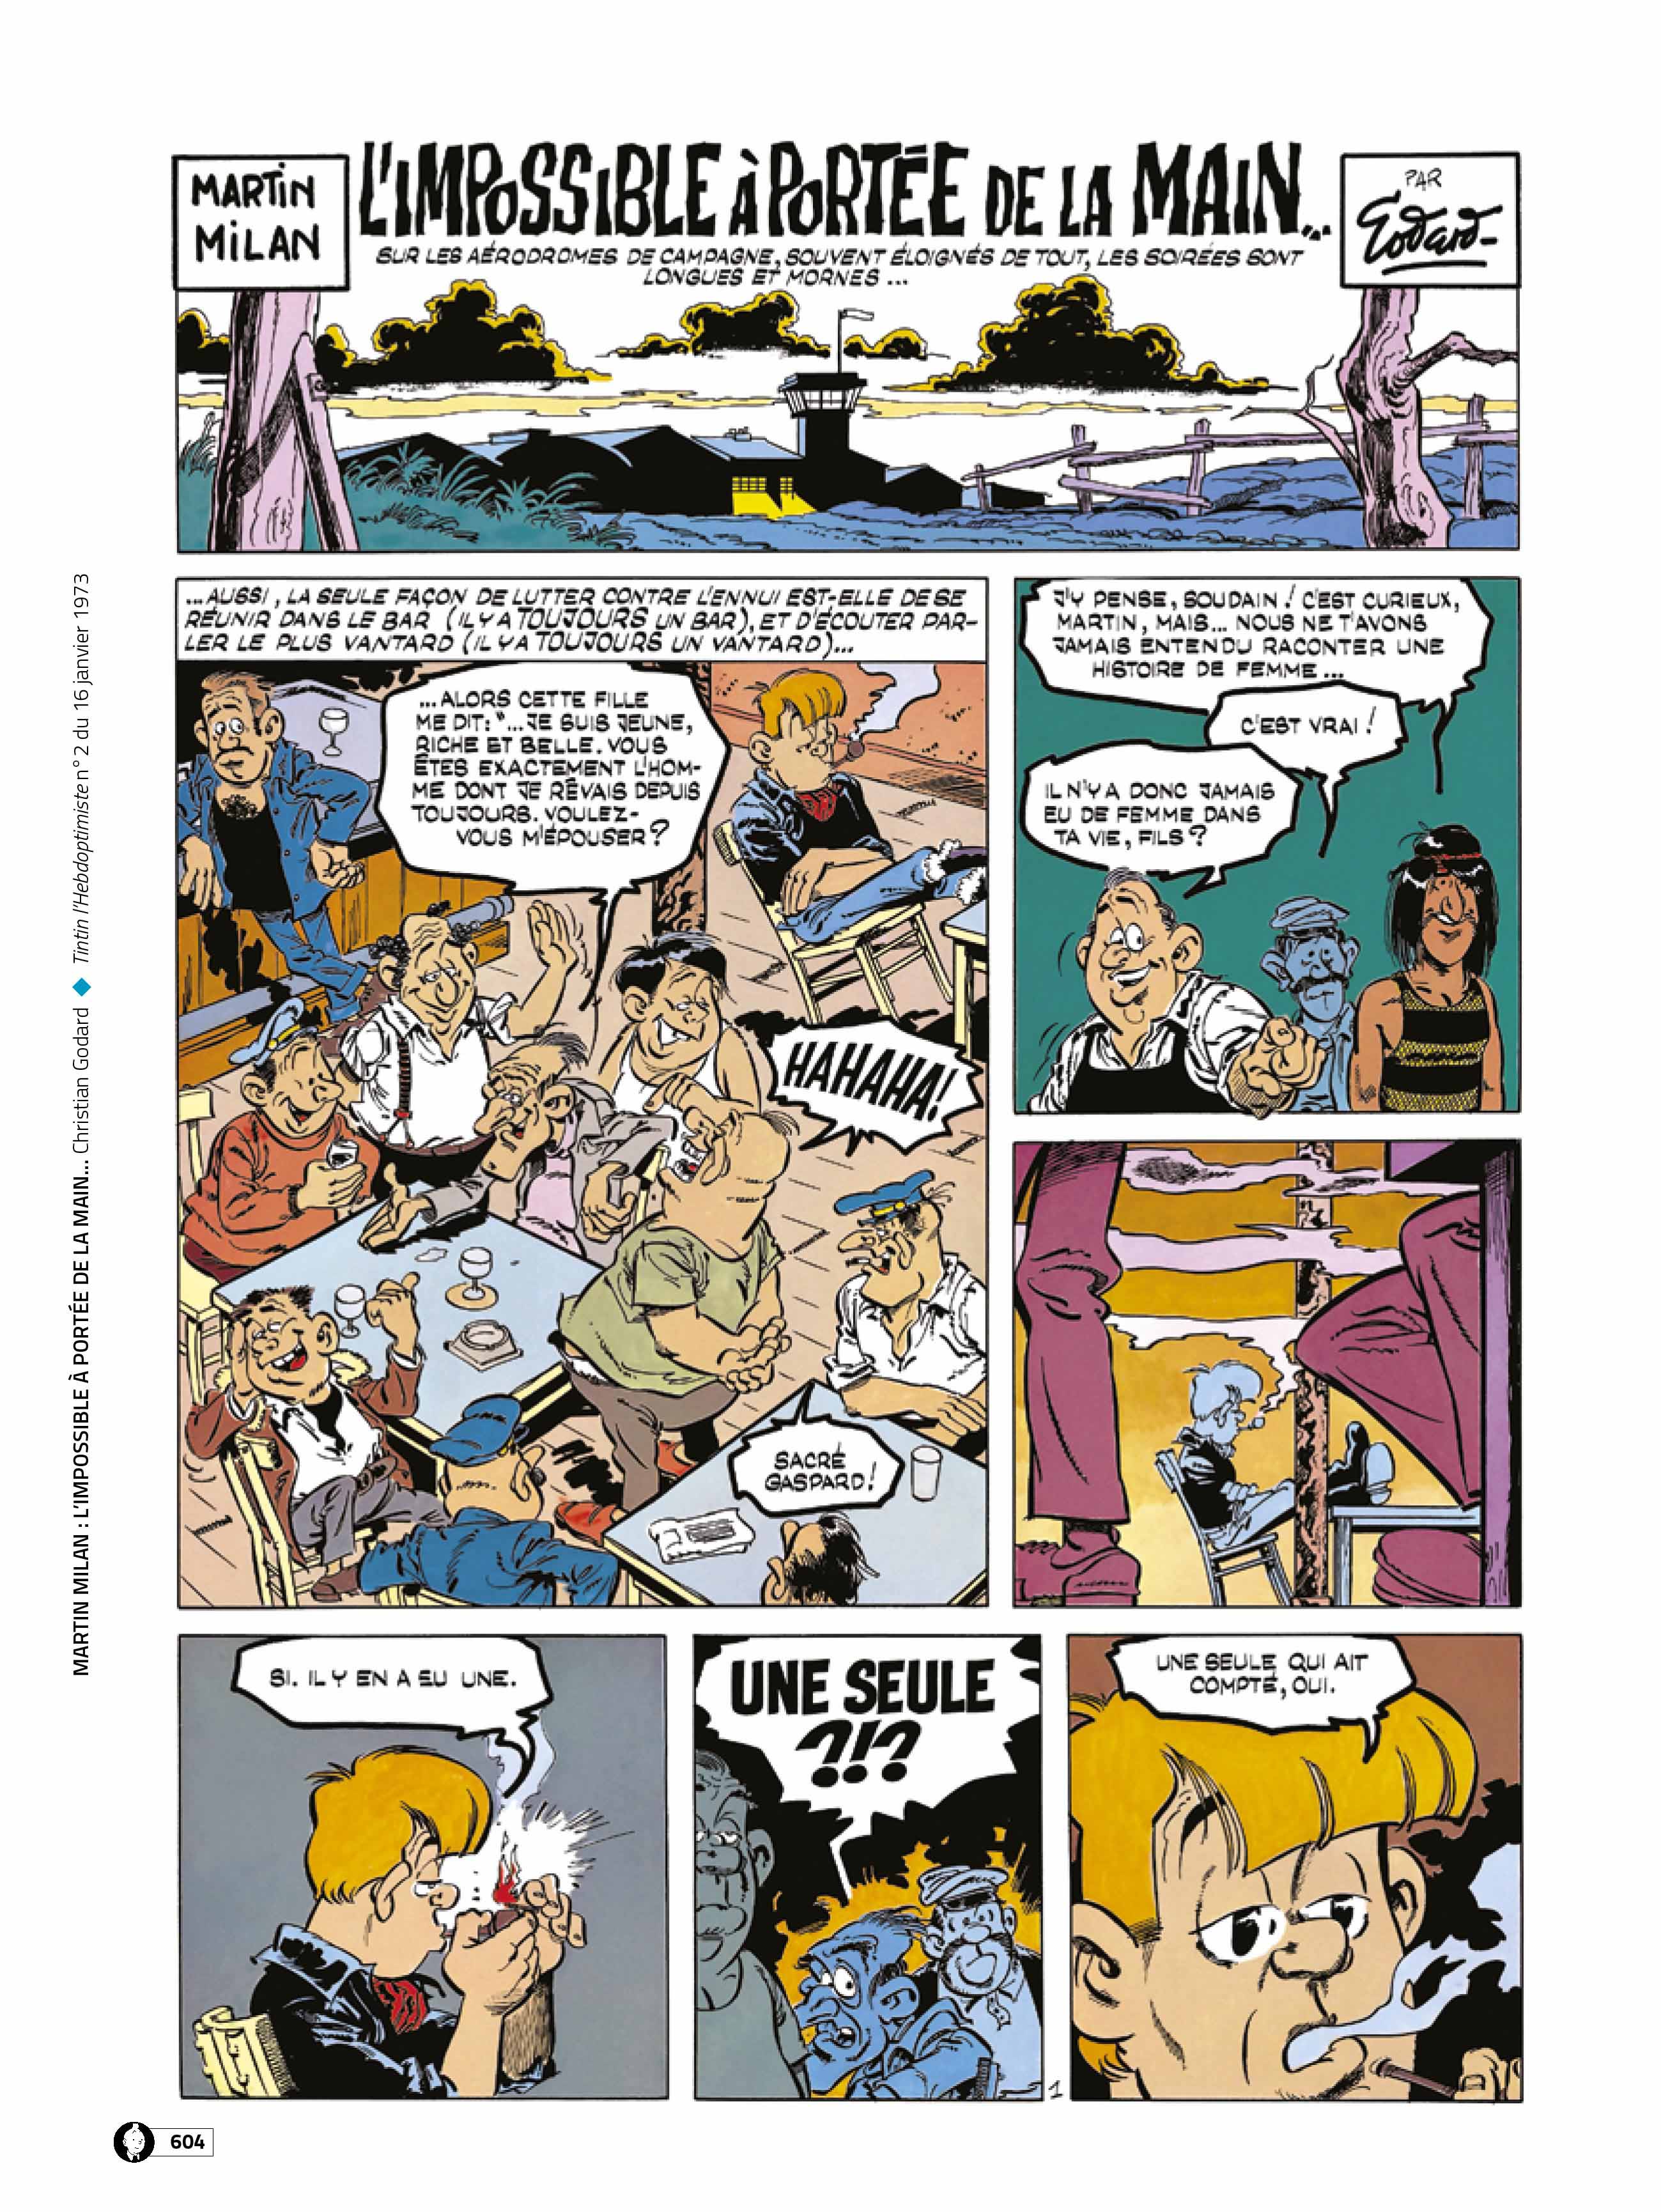 Le Journal de Tintin revient pour ses 77 ans